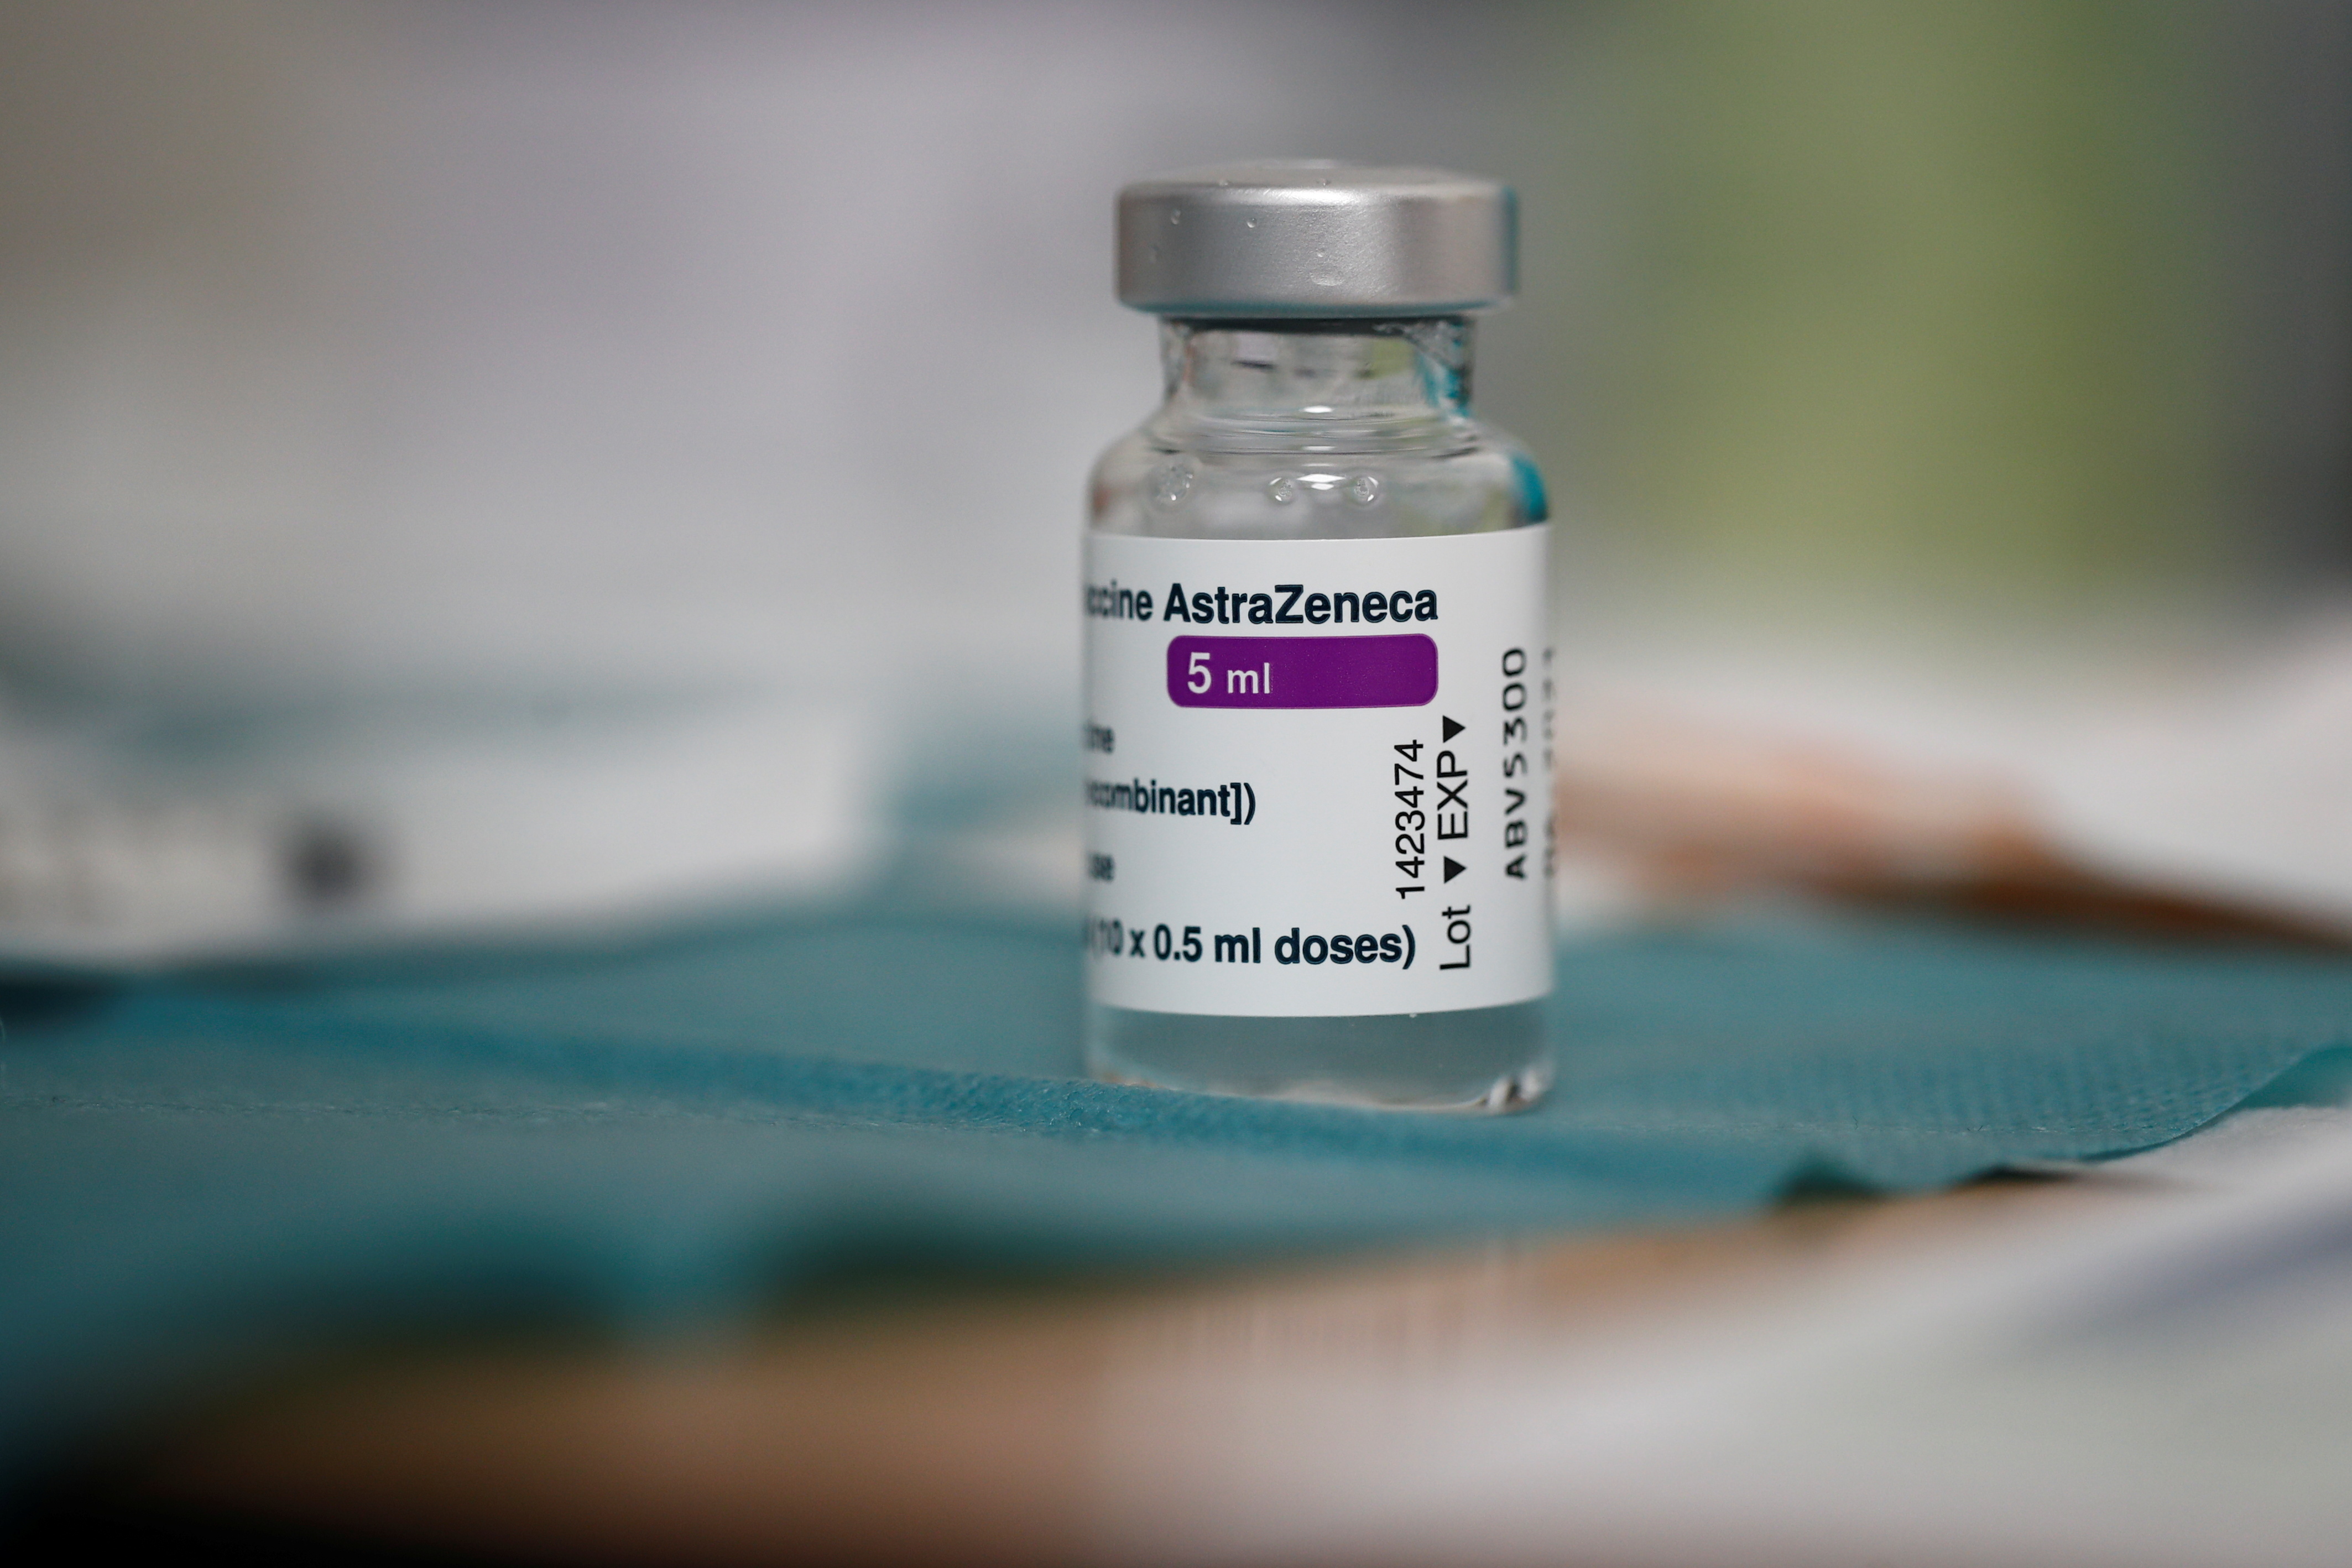 Alergias graves se añaden a posibles efectos secundarios de vacuna AstraZeneca